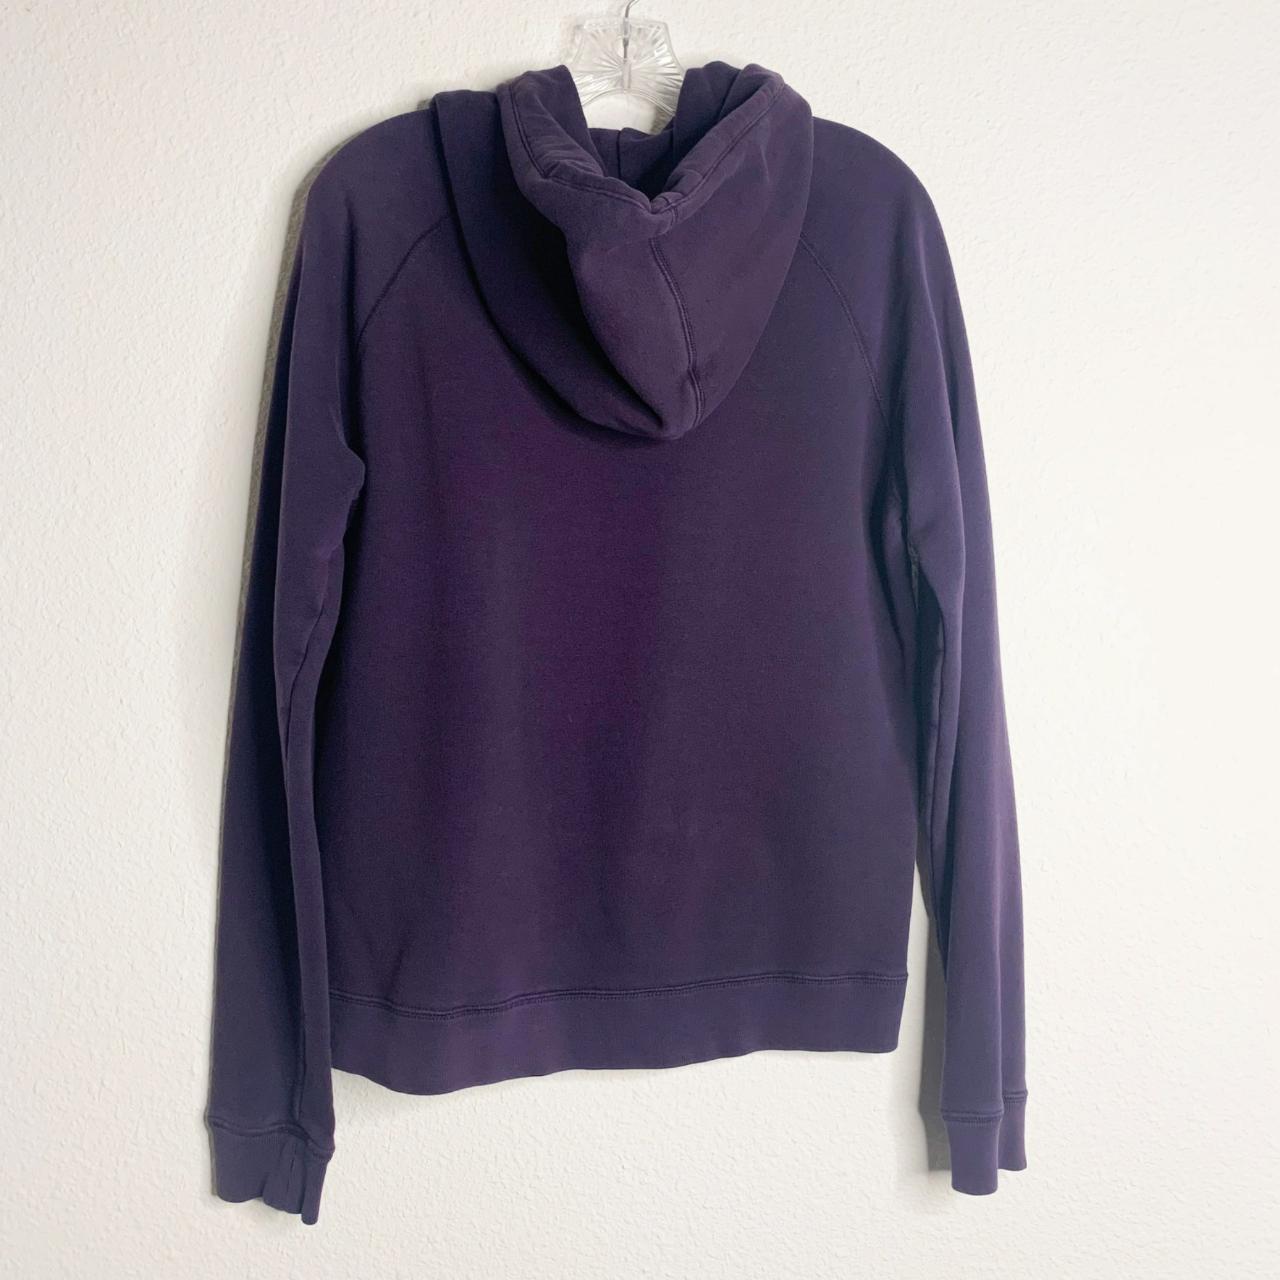 Nike Purple Pullover Hoodie Sweatshirt Spell Out Big... - Depop